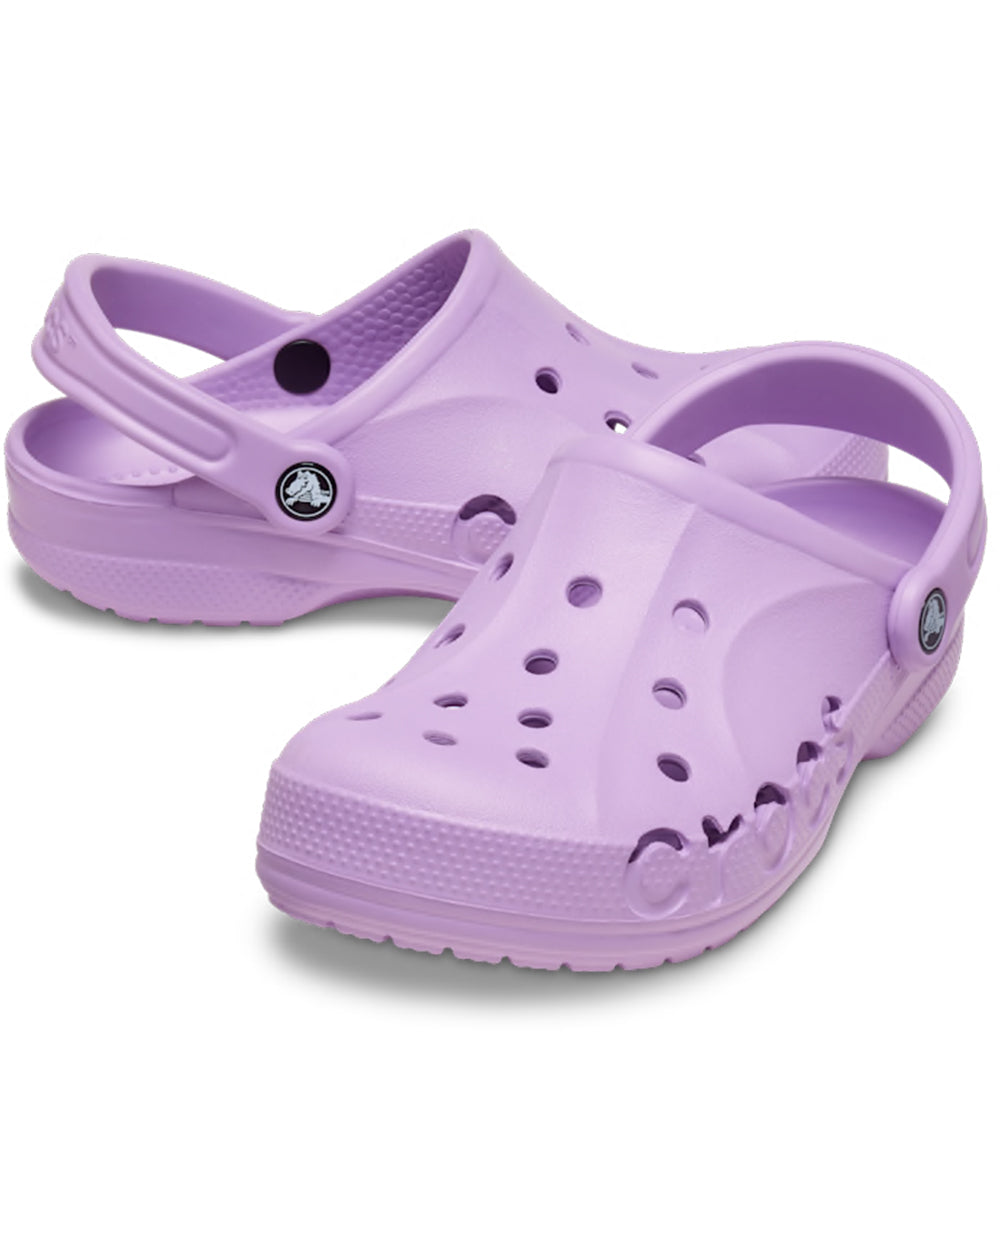 Buy Crocs Baya Clog